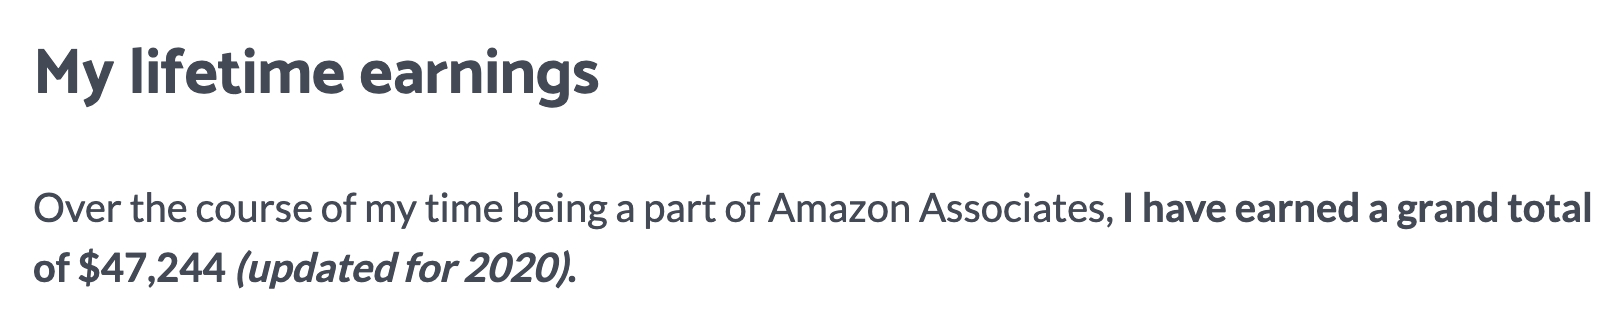 Amazon affiliate lifetime earnings